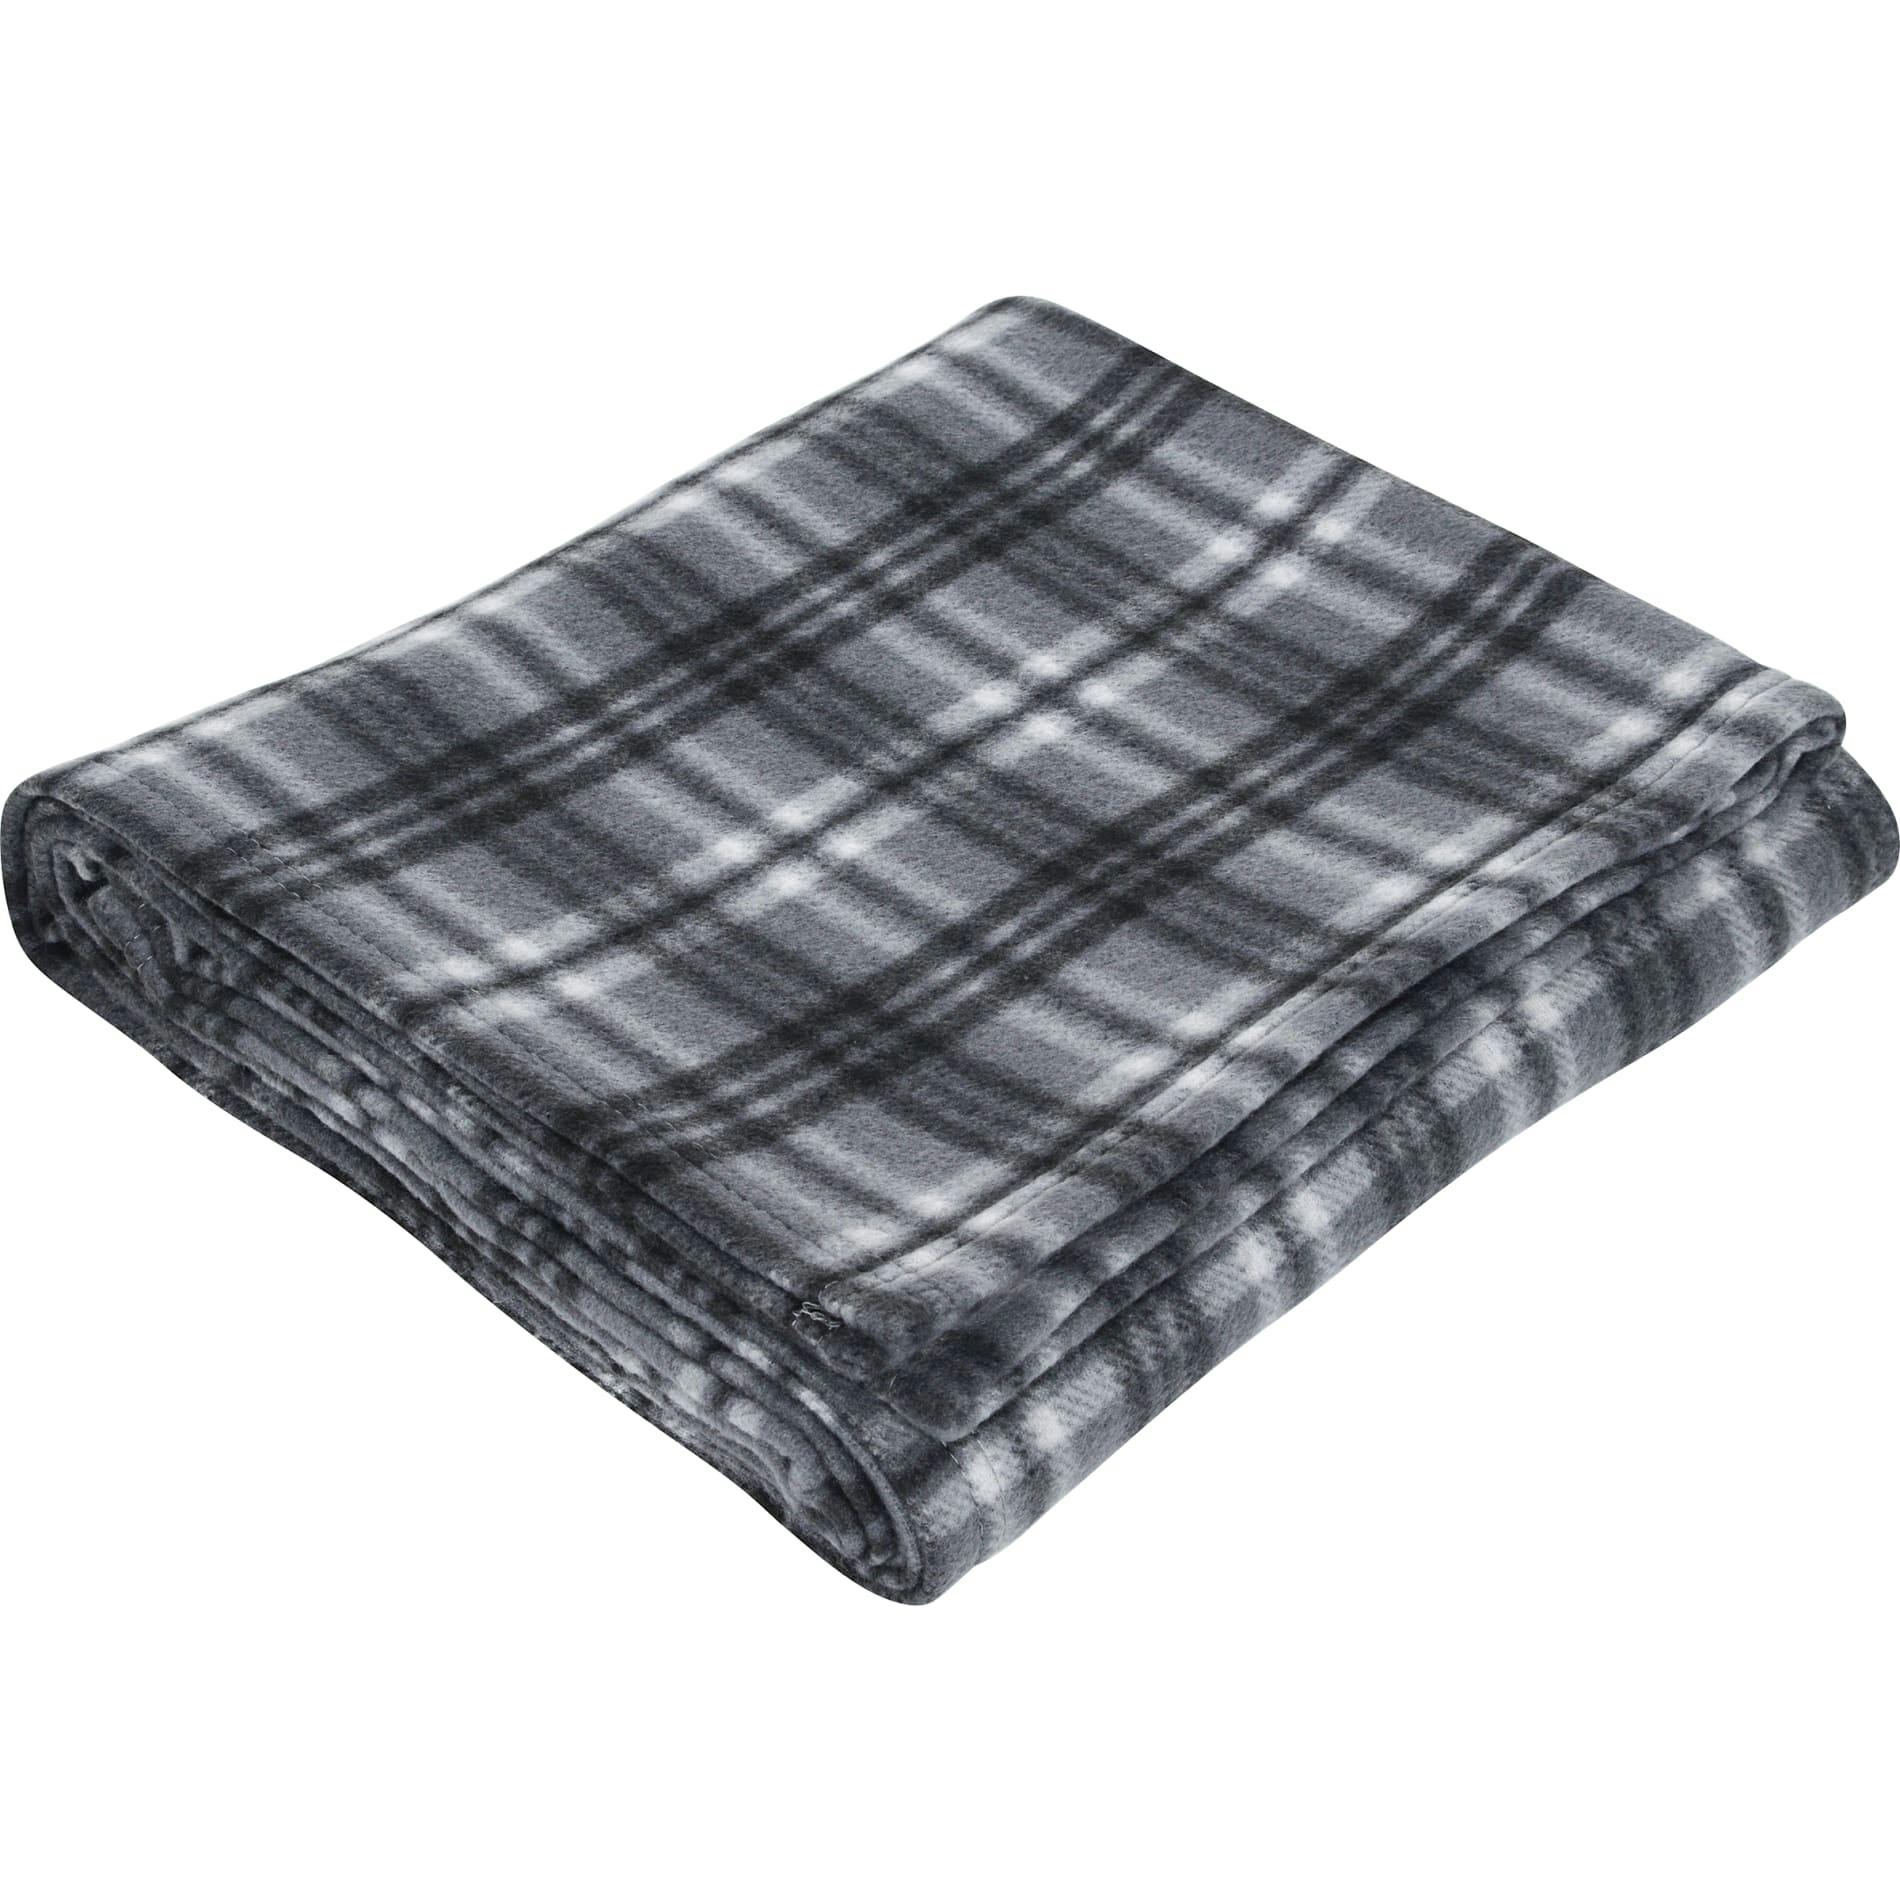 Plaid Fleece Blanket - additional Image 1